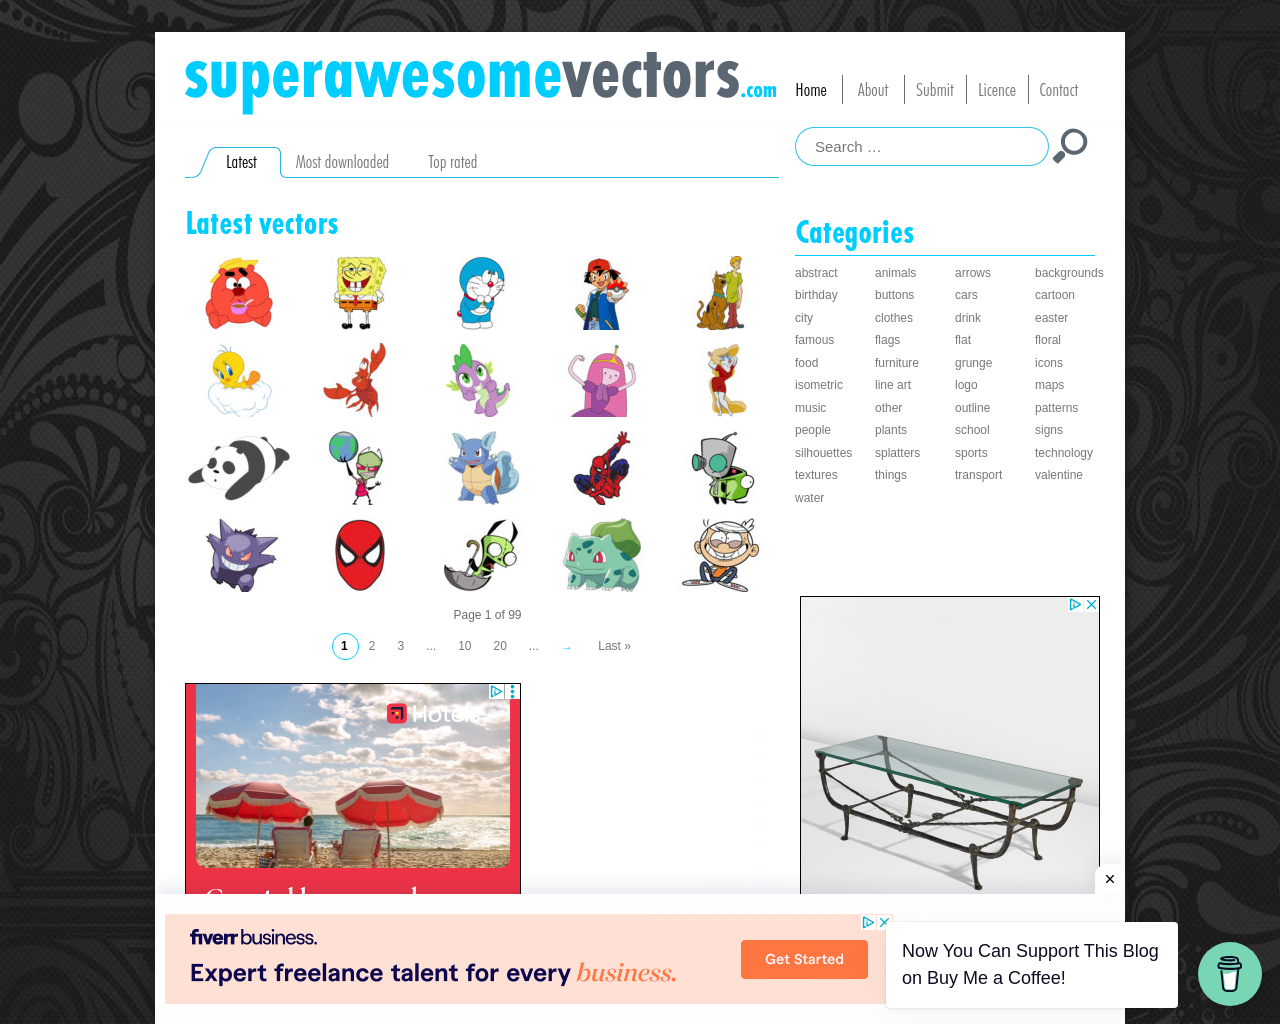 superawesomevectors.com